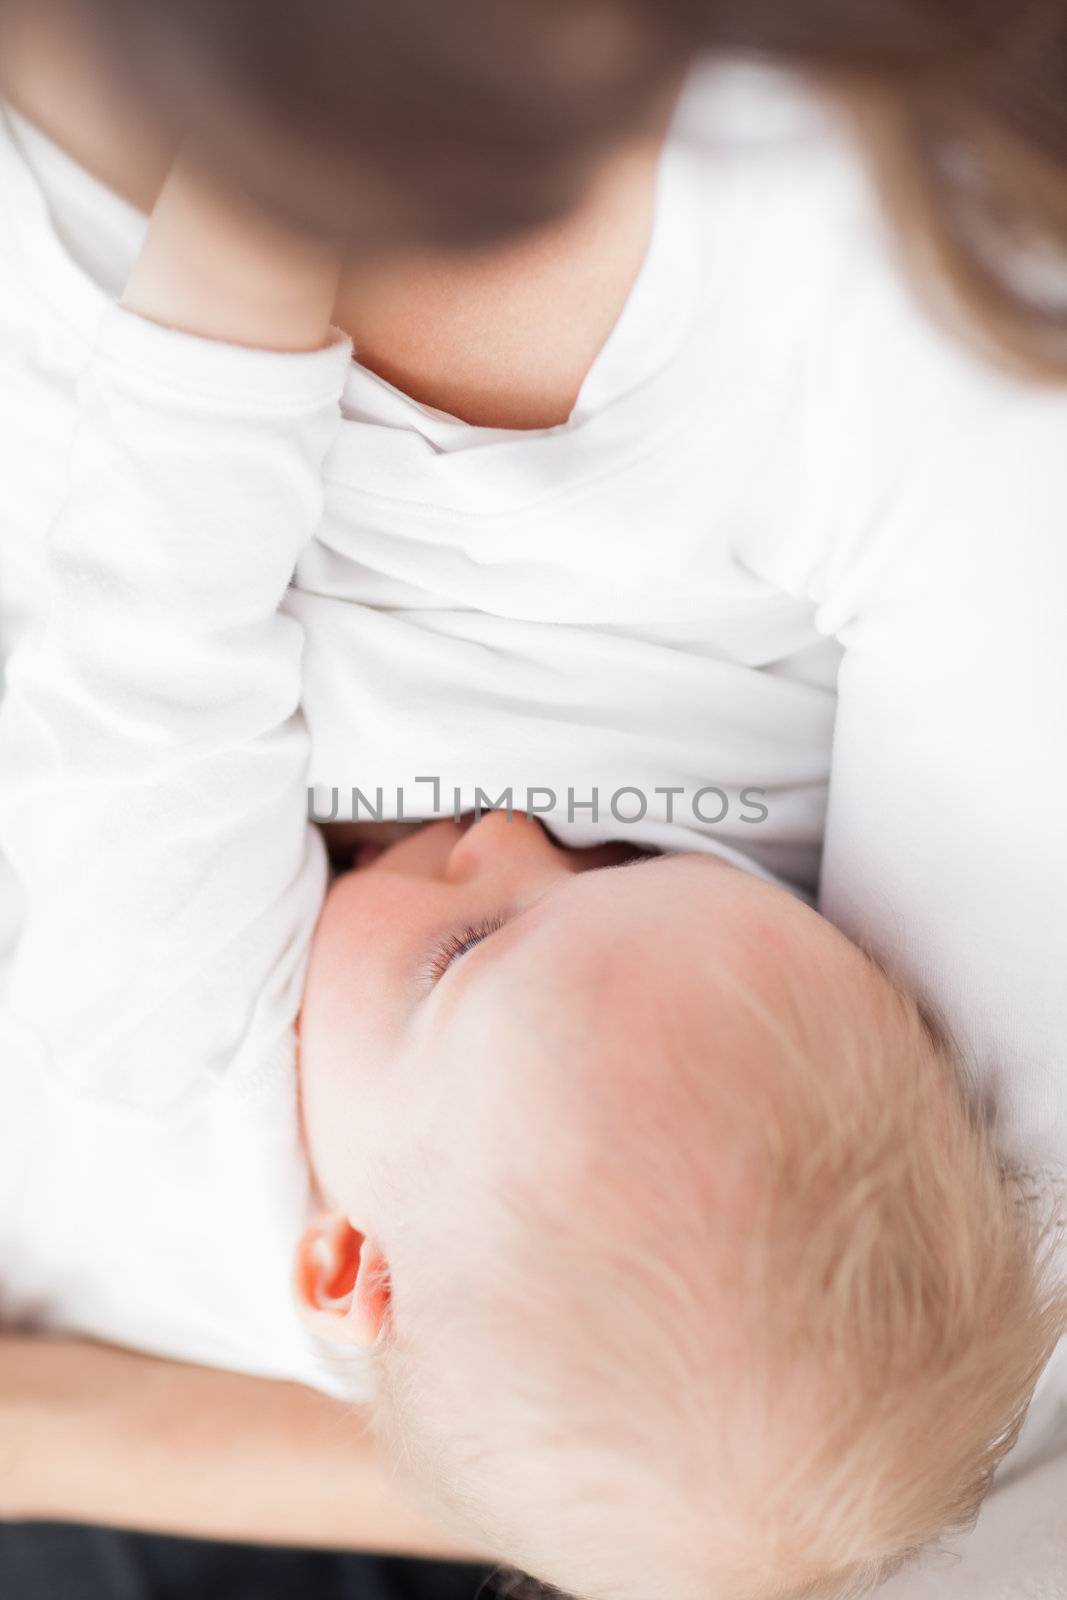 Cute baby being breastfed by Wavebreakmedia